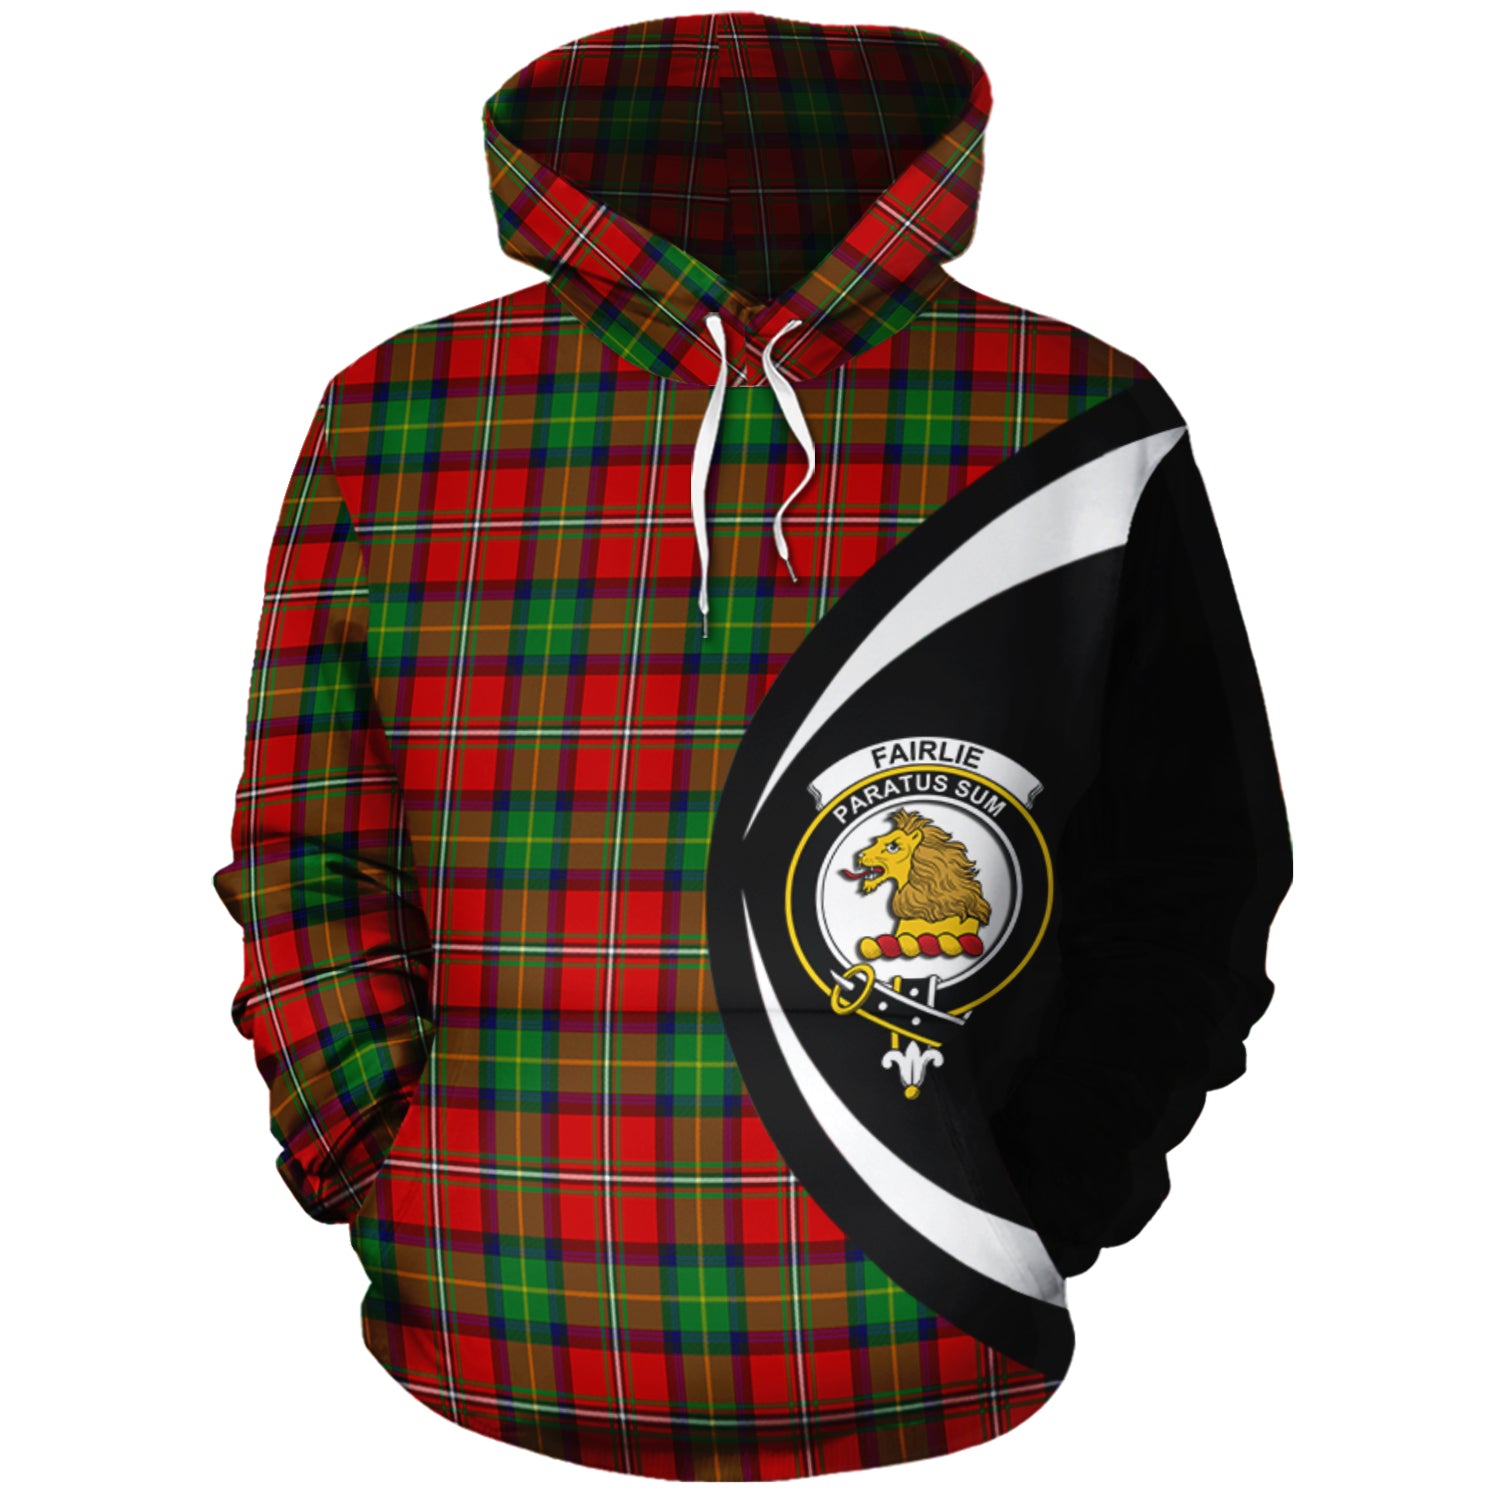 scottish-fairlie-modern-clan-crest-circle-style-tartan-hoodie